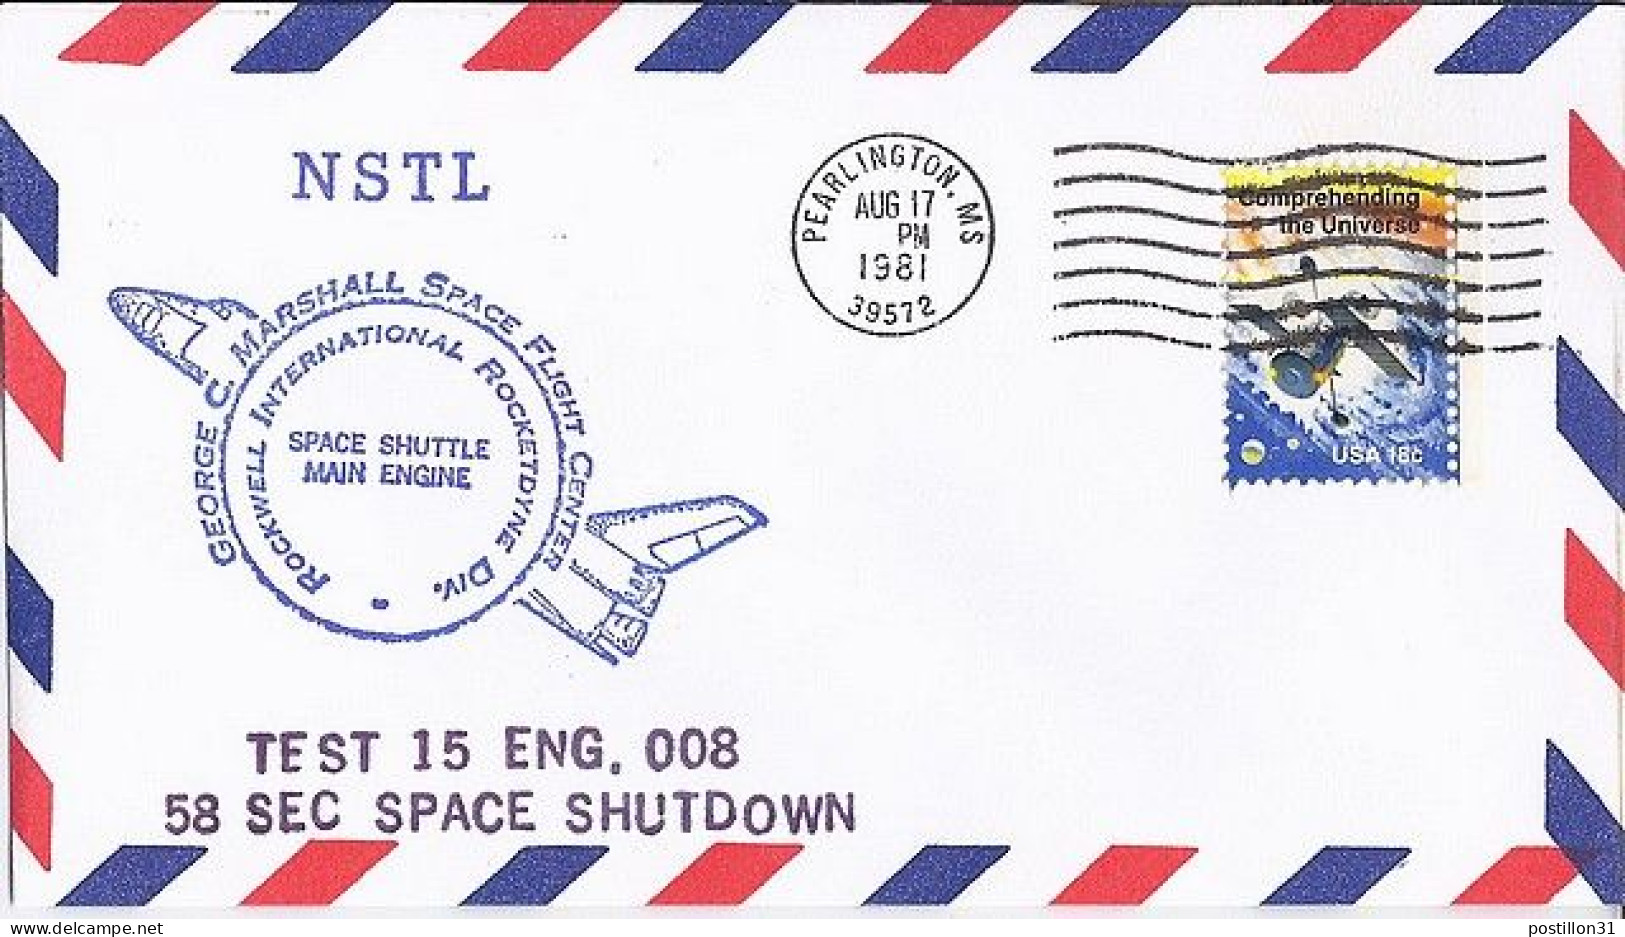 USA-AERO N° 1338 S/L.DE PEARLINGTON/17.8.81  THEME: NAVETTE SPACIALE - 3c. 1961-... Lettres